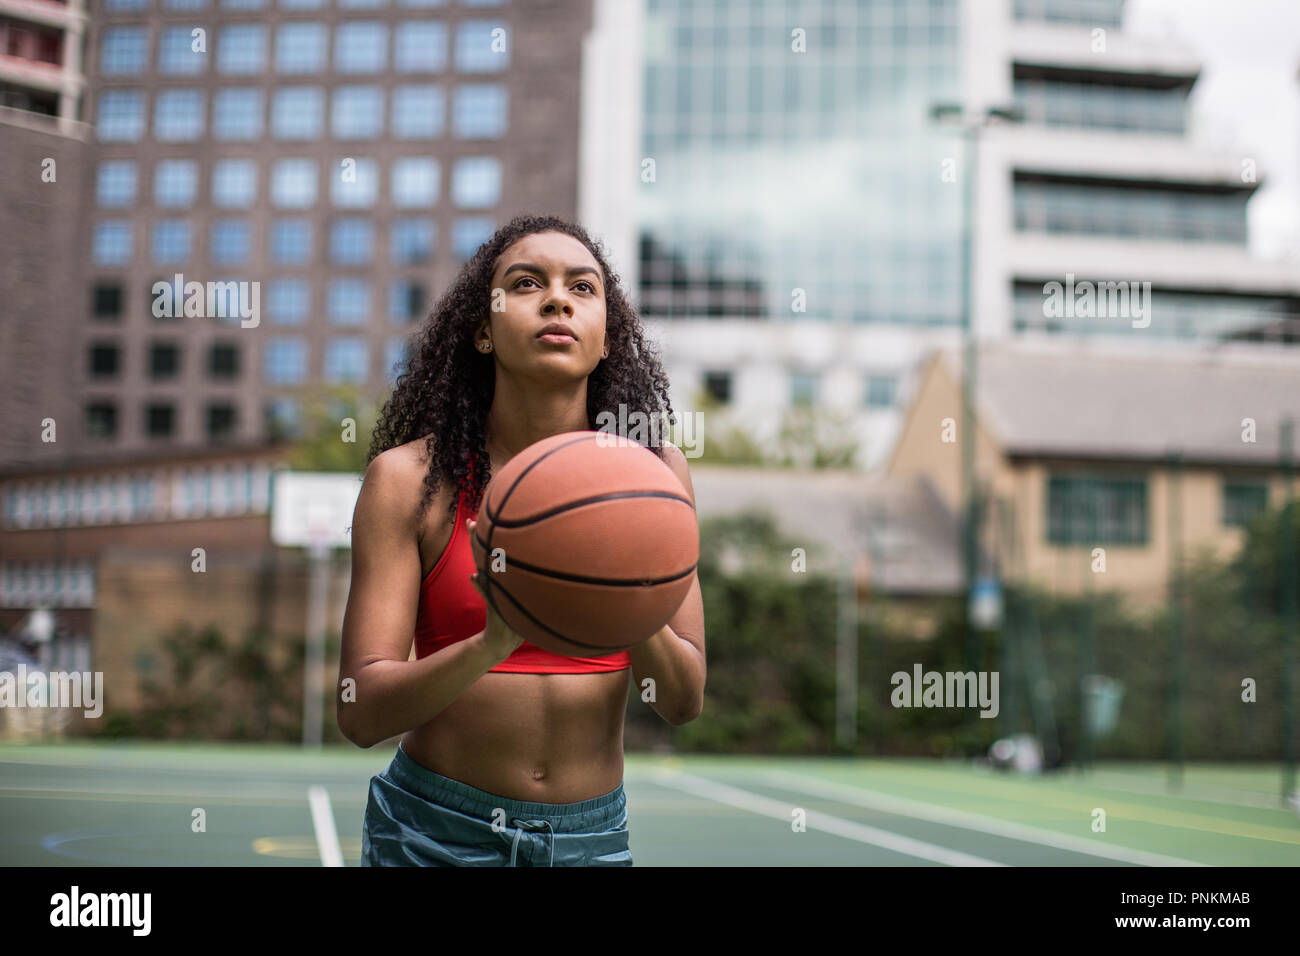 Junge Erwachsene weiblichen Basketball Player über ein Hoop schießen Stockfoto